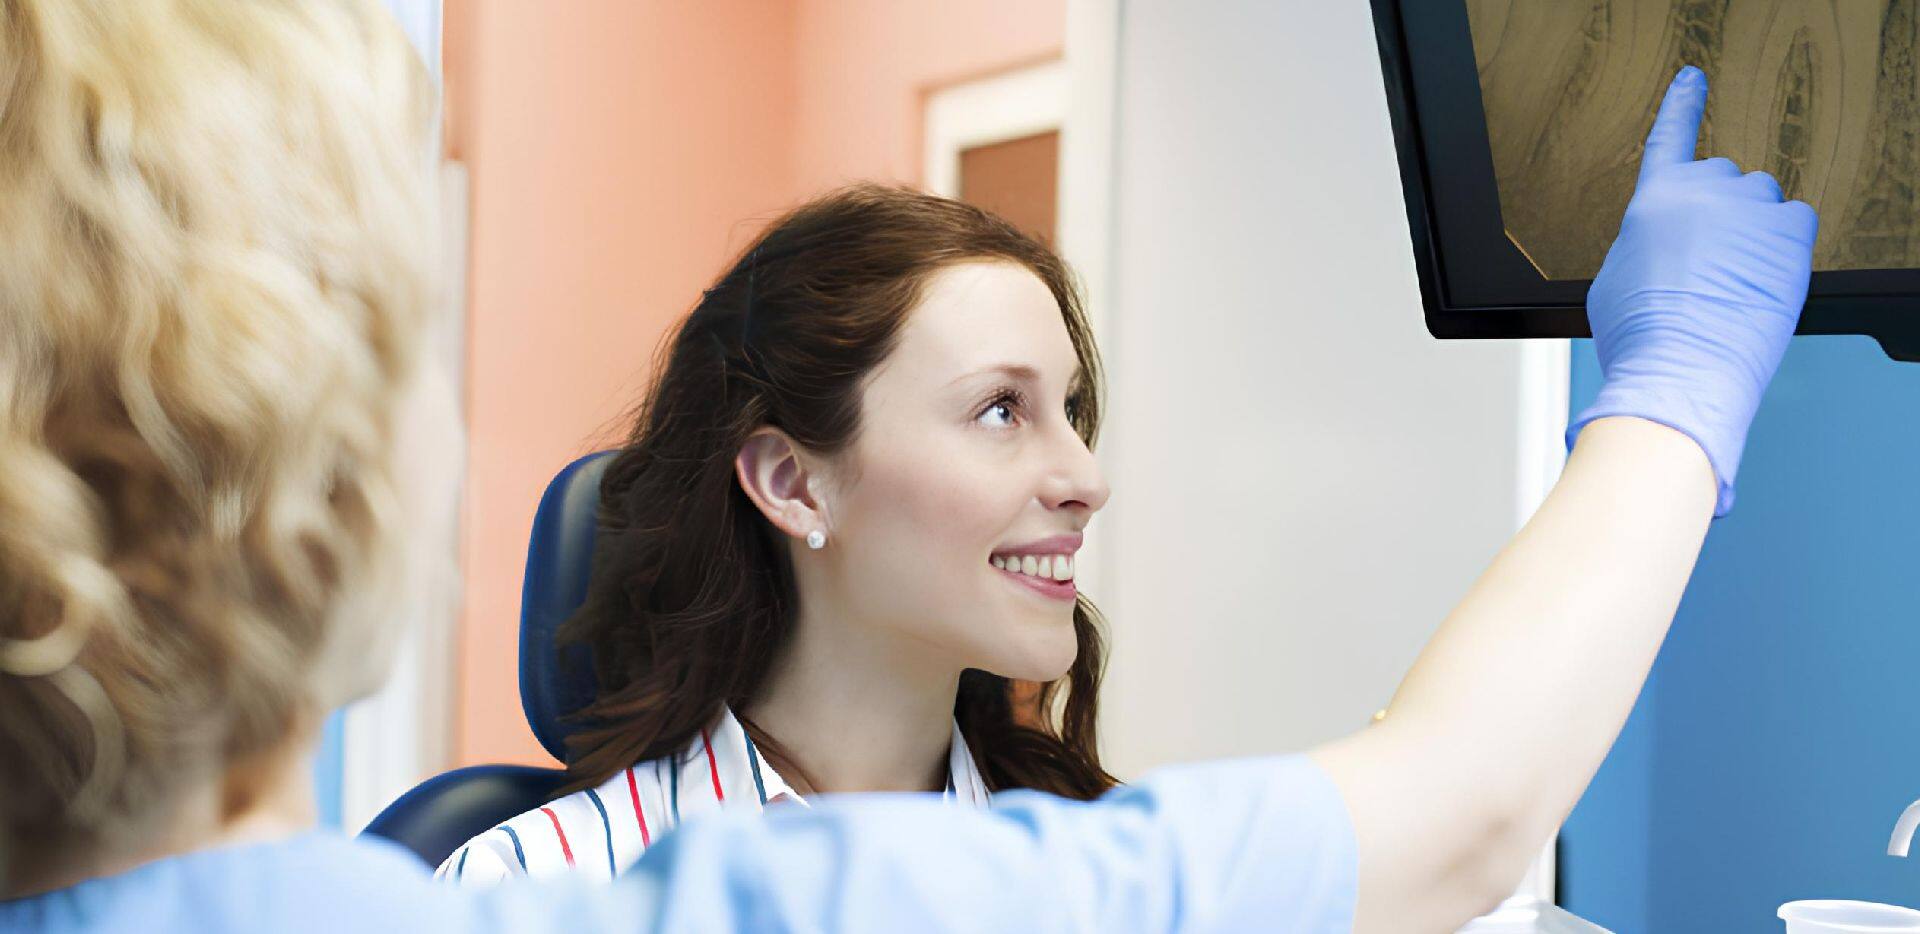 odontologue montrant une radiographie à une patiente